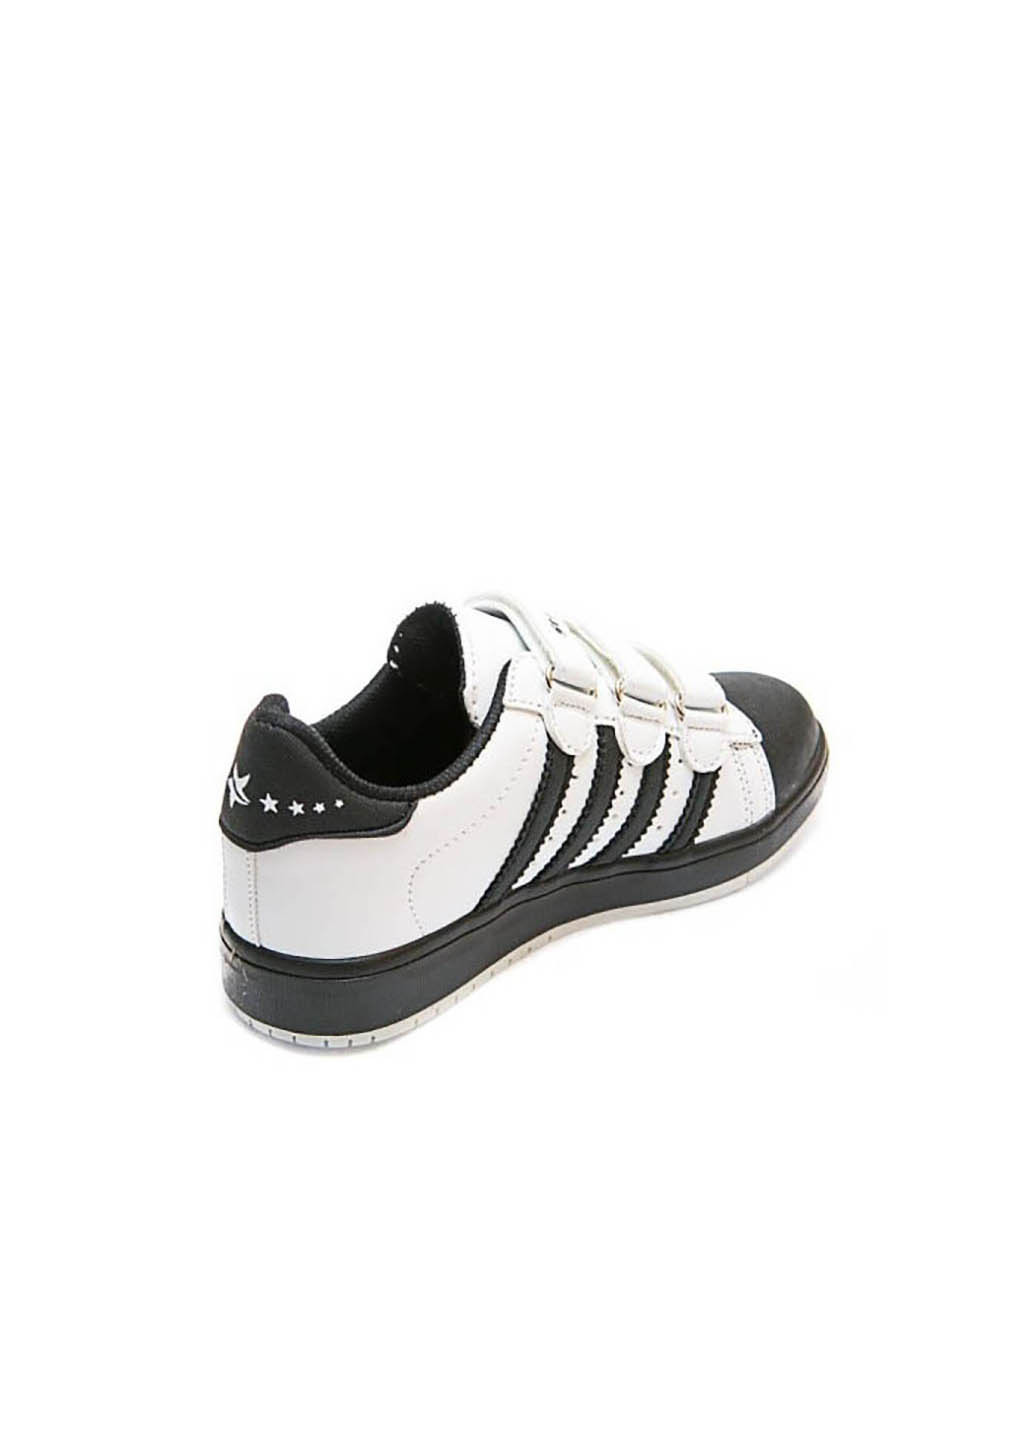 Черные демисезонные кроссовки Starkids 550 чёрн/бел (31-35)35